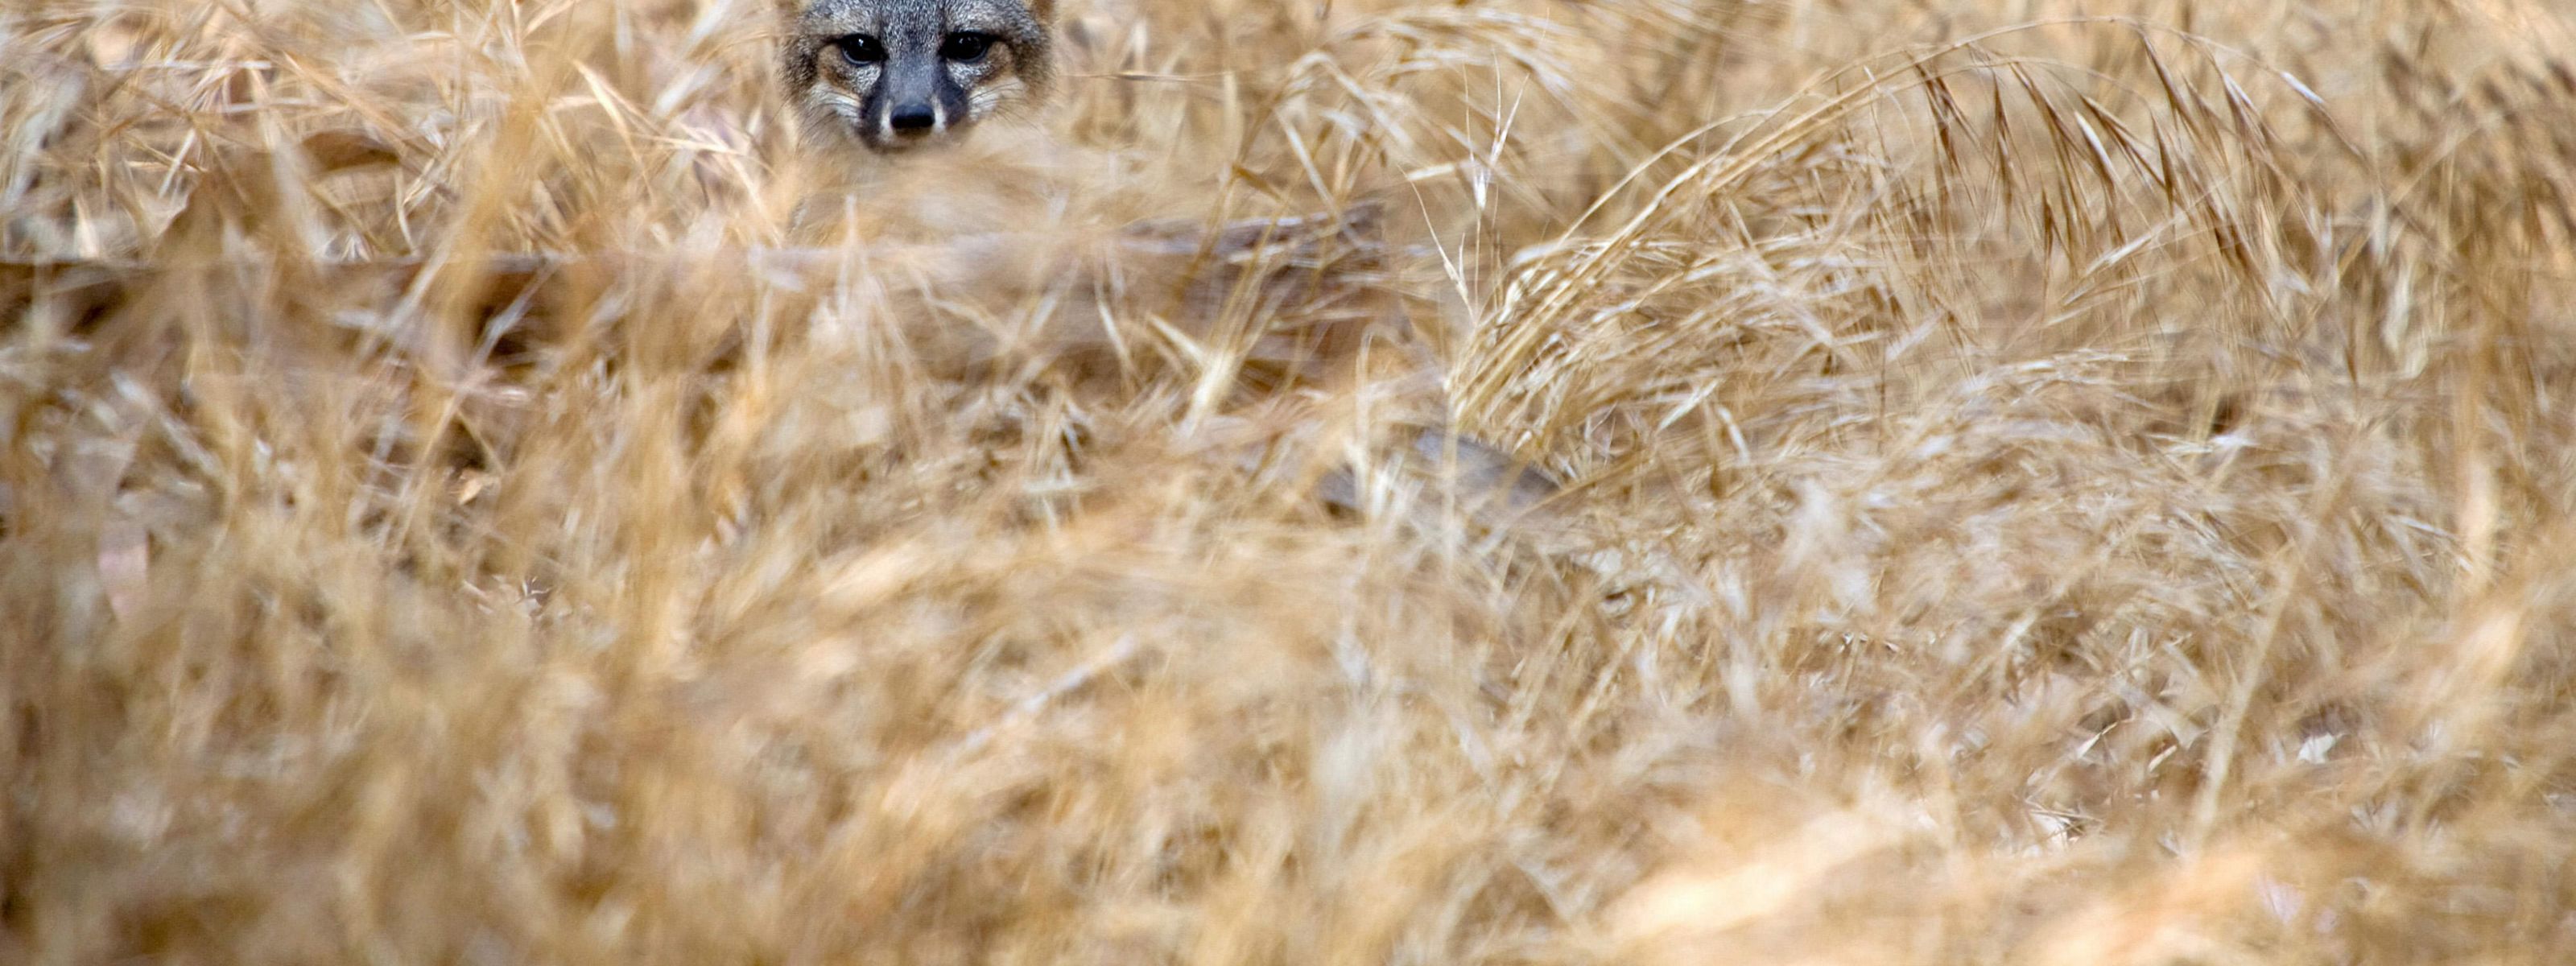 A Santa Cruz Island fox hides in tall grasses.